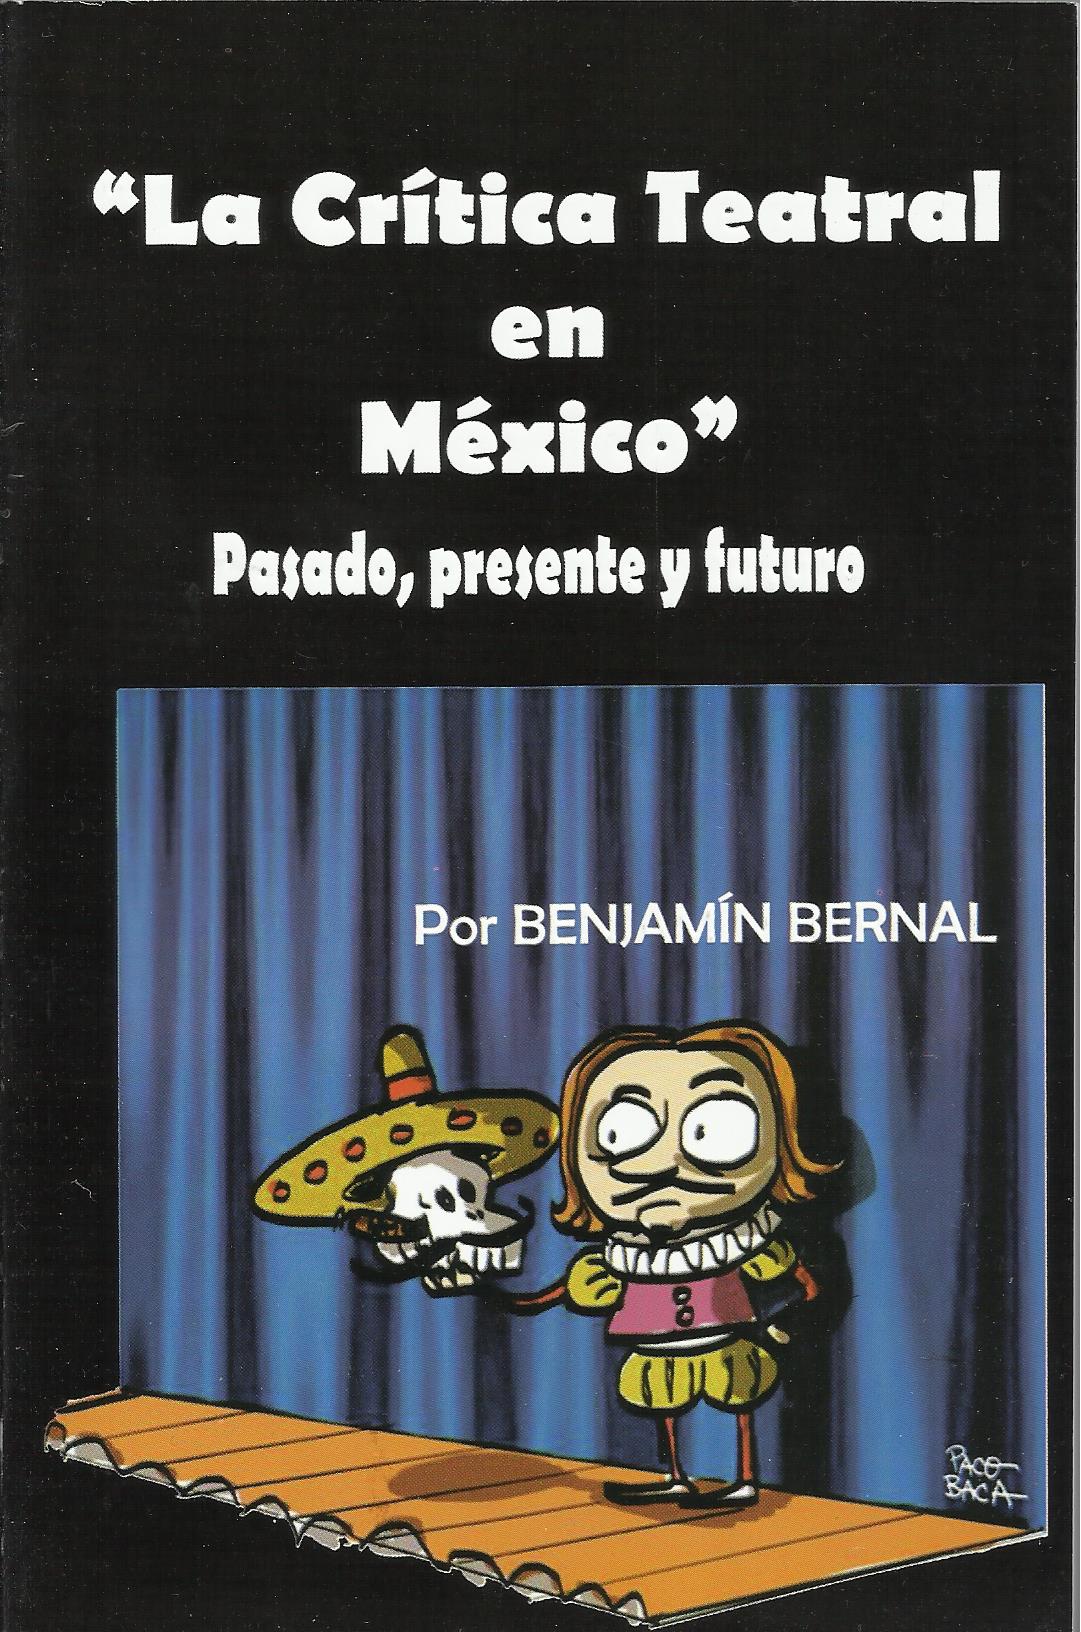 Nuevo libro de Benjamin Bernal "La Crítica de Teatro en México"